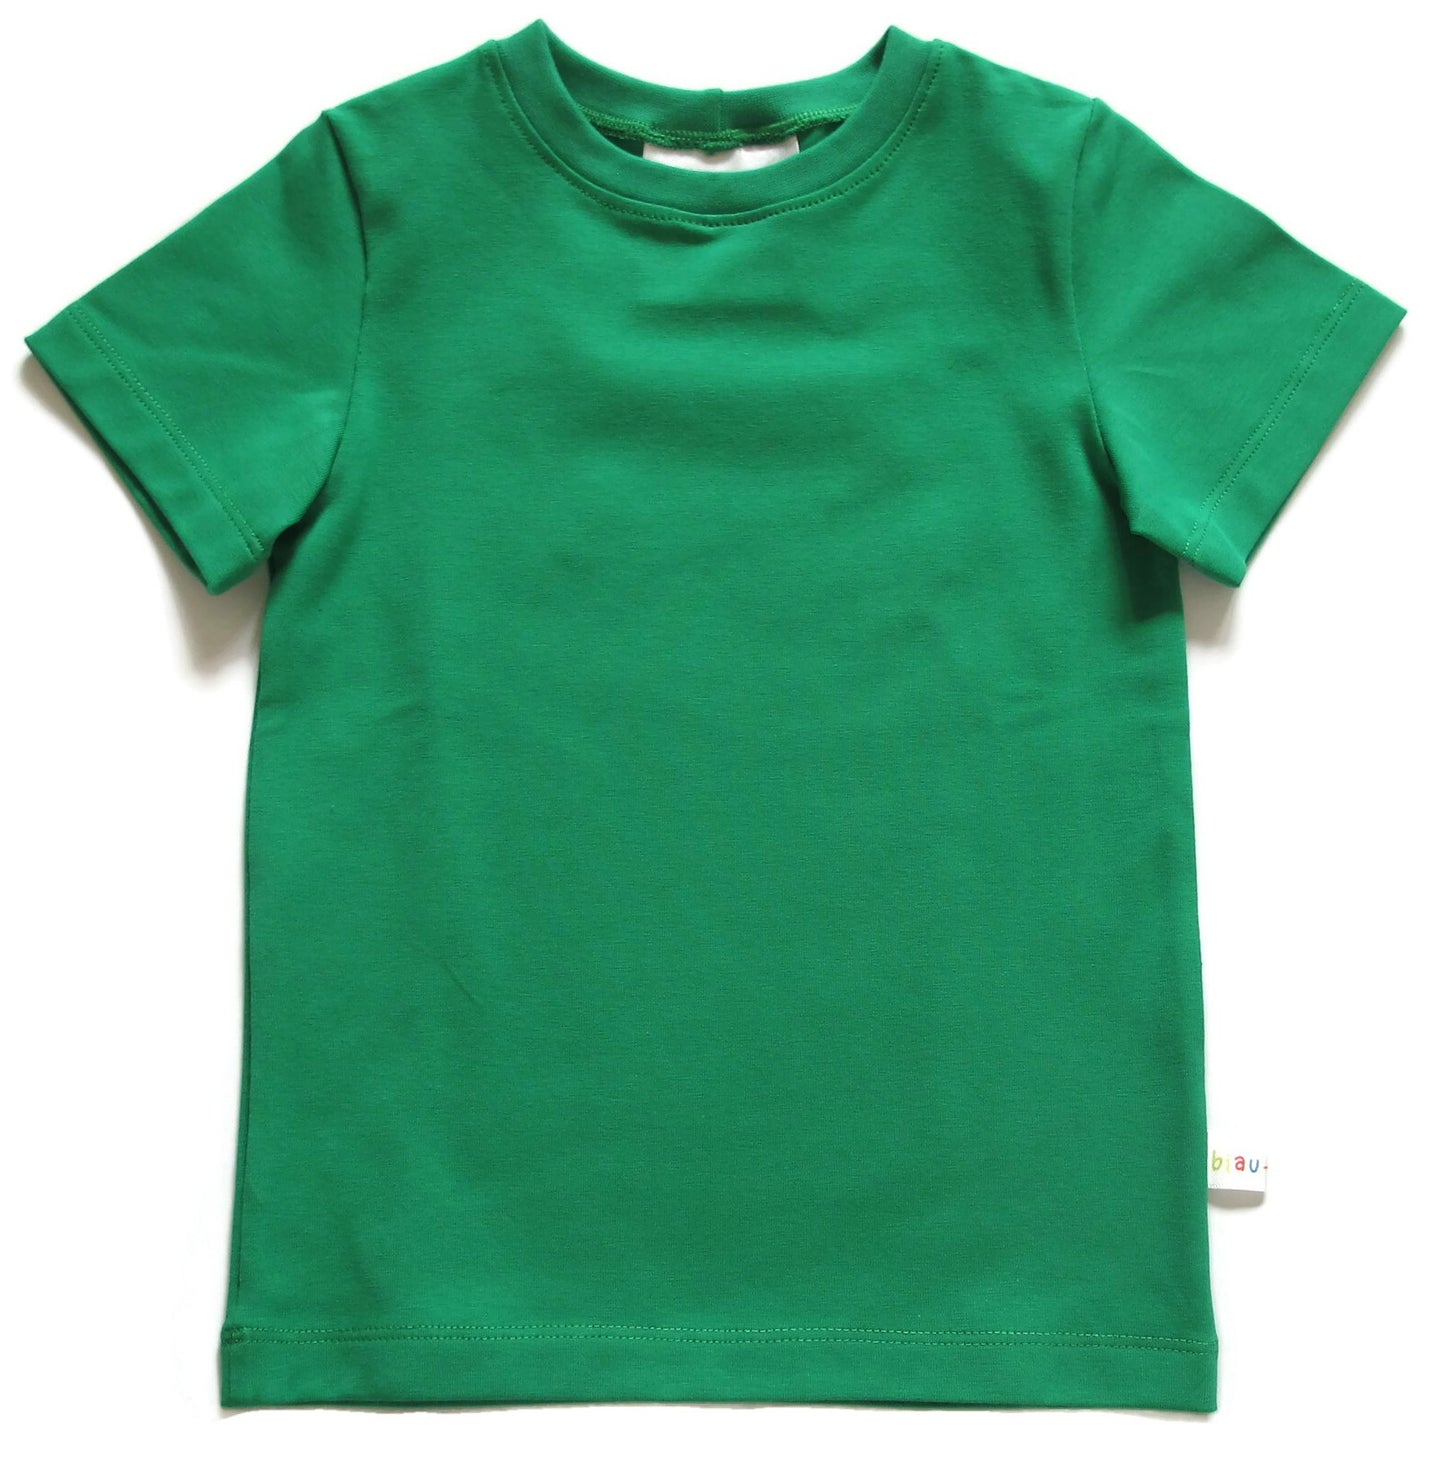 Biau-biau t-shirt - green